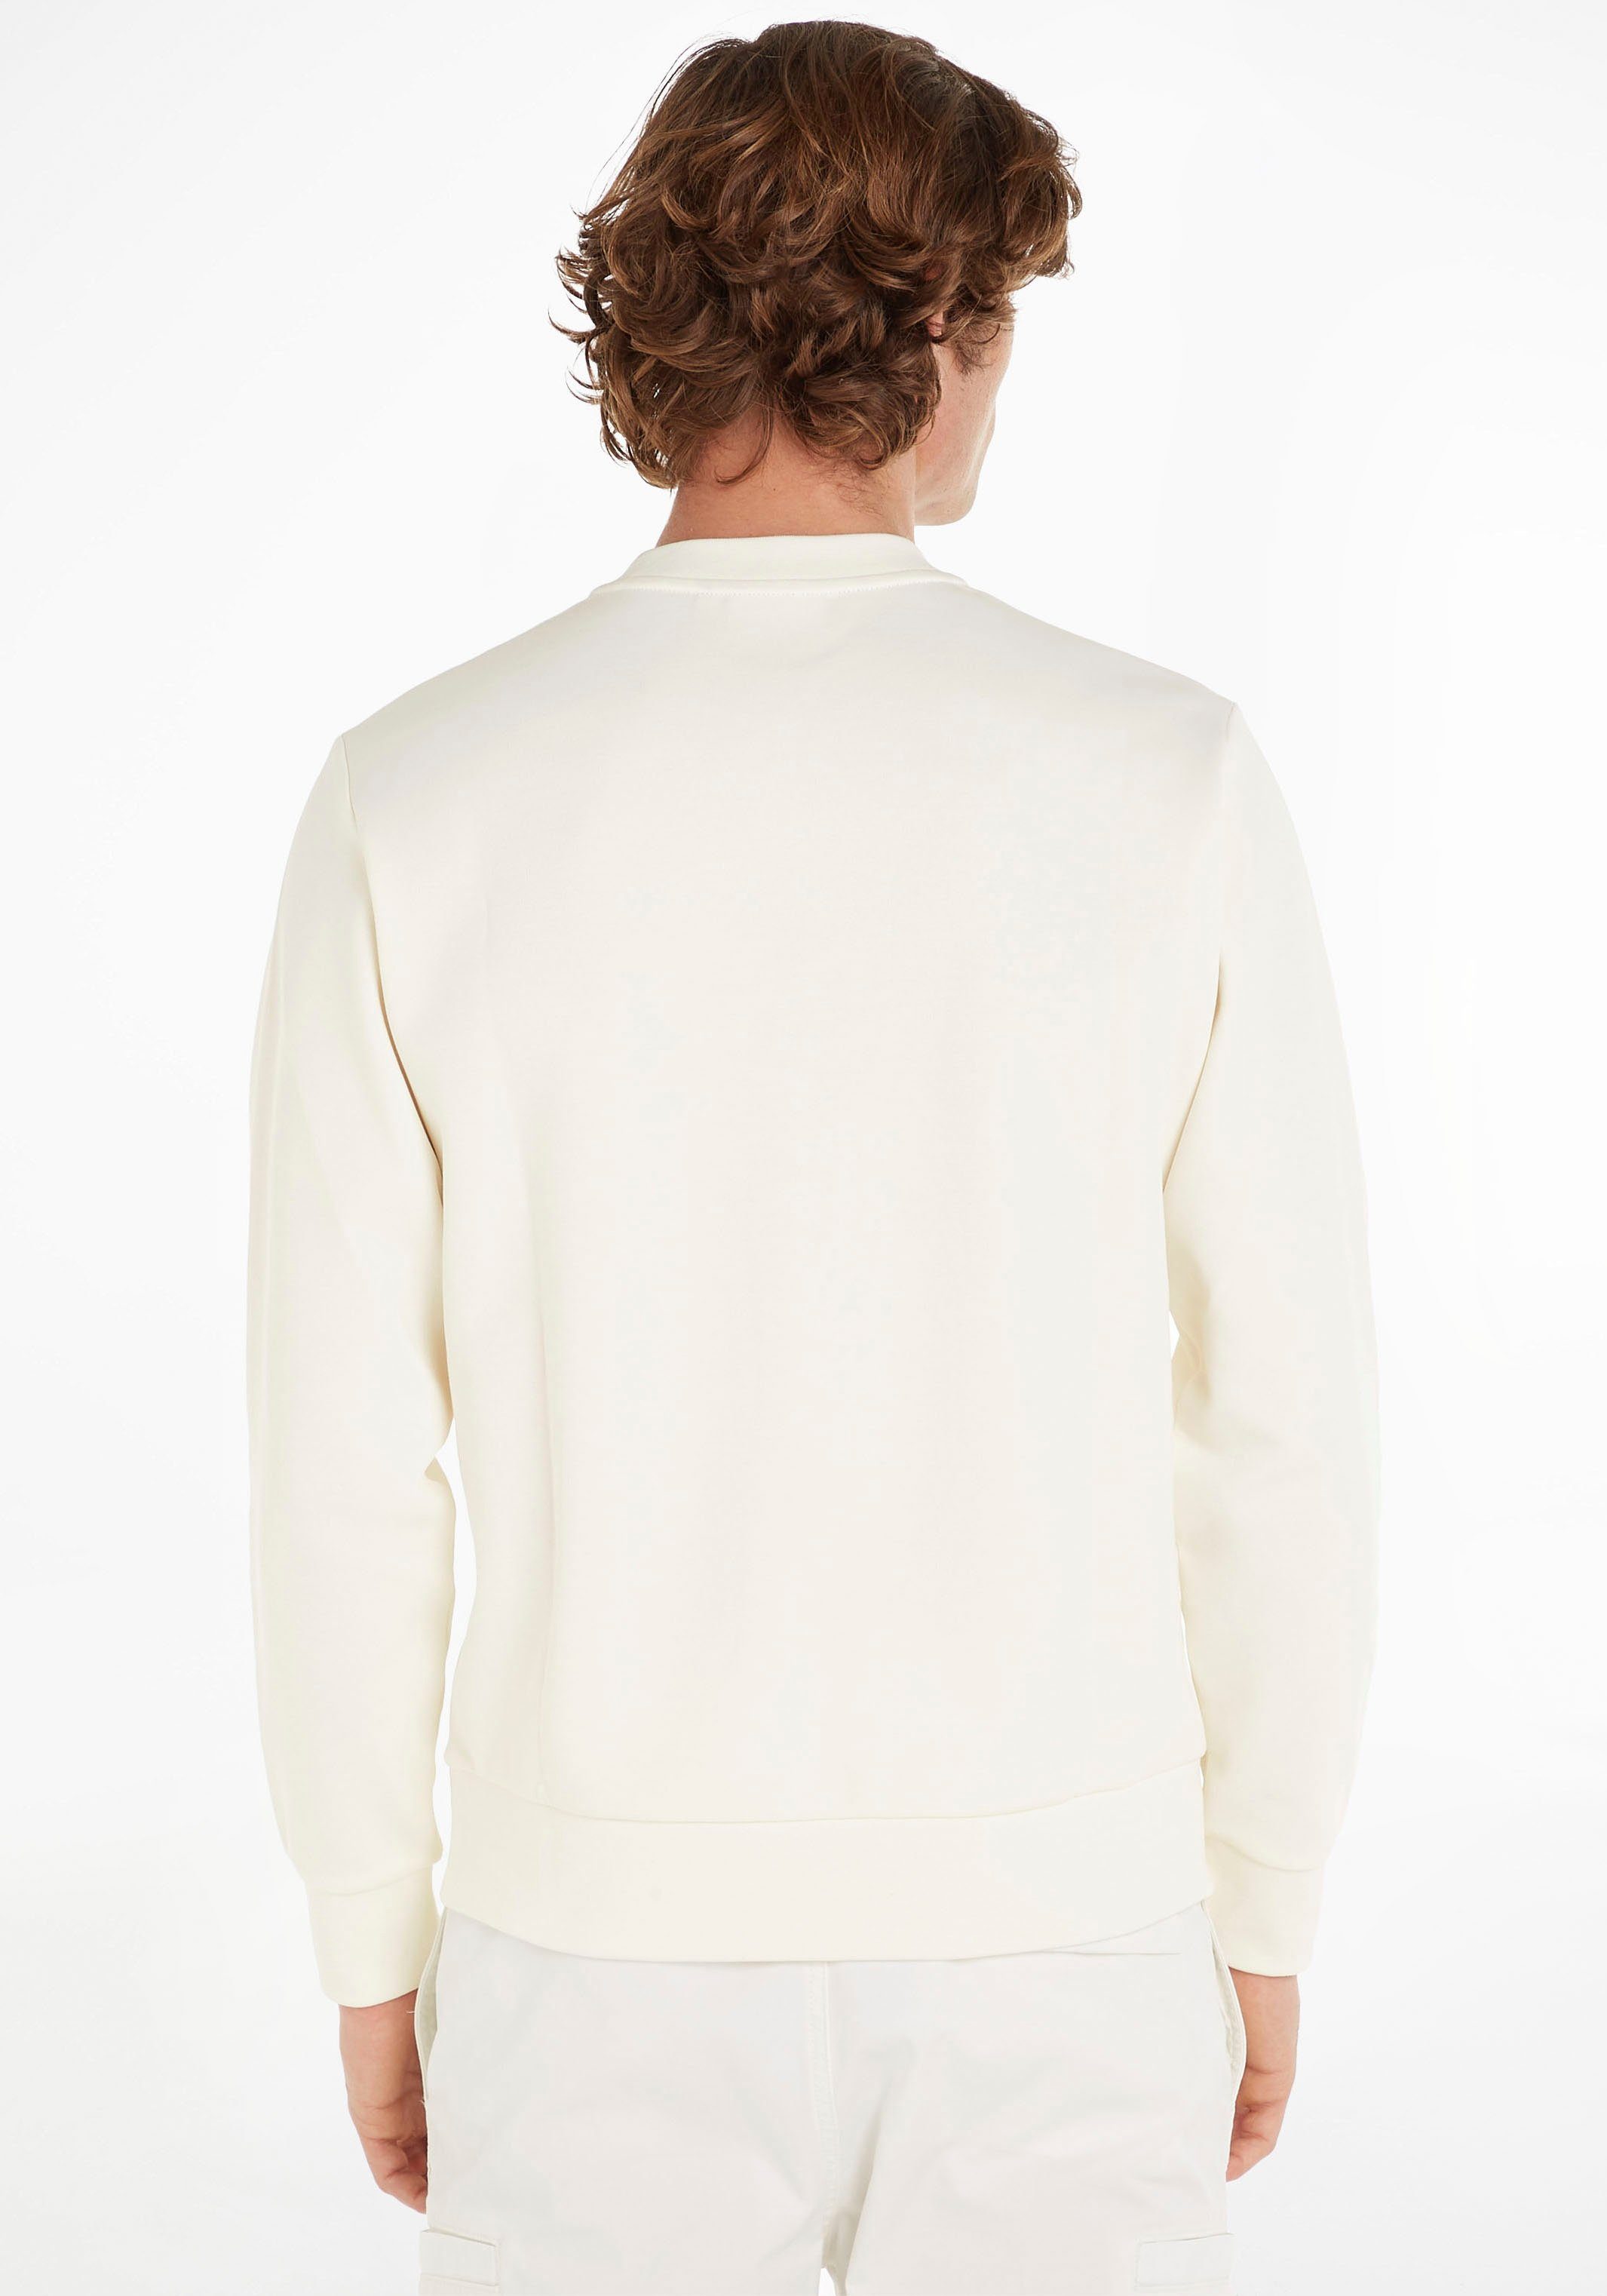 SWEATSHIRT halsnahmen REPREVE Sweatshirt Rundhalsausschnitt LOGO MICRO ecru mit Calvin Klein